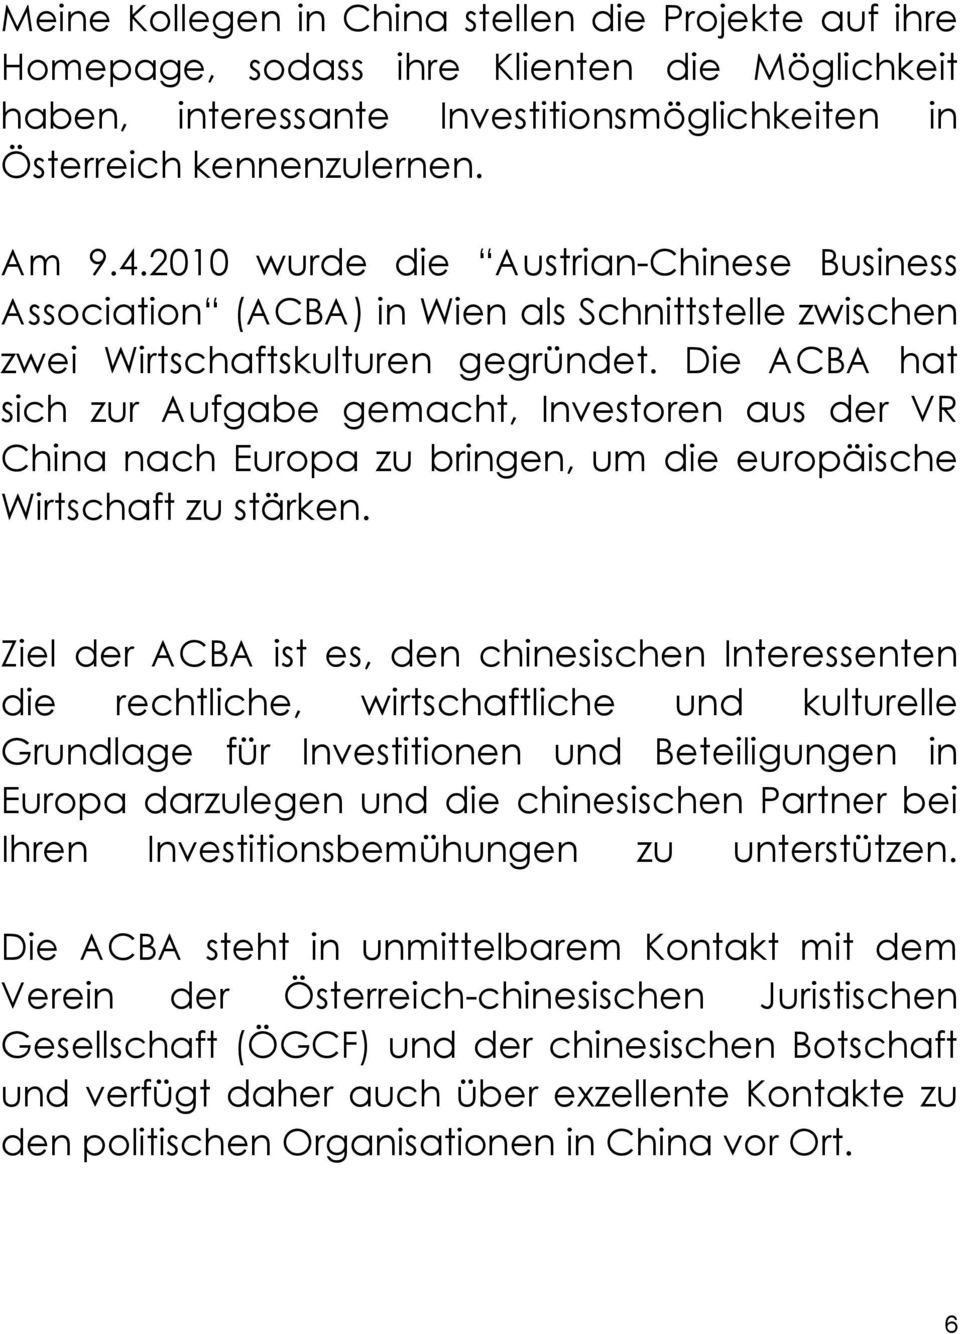 Die ACBA hat sich zur Aufgabe gemacht, Investoren aus der VR China nach Europa zu bringen, um die europäische Wirtschaft zu stärken.